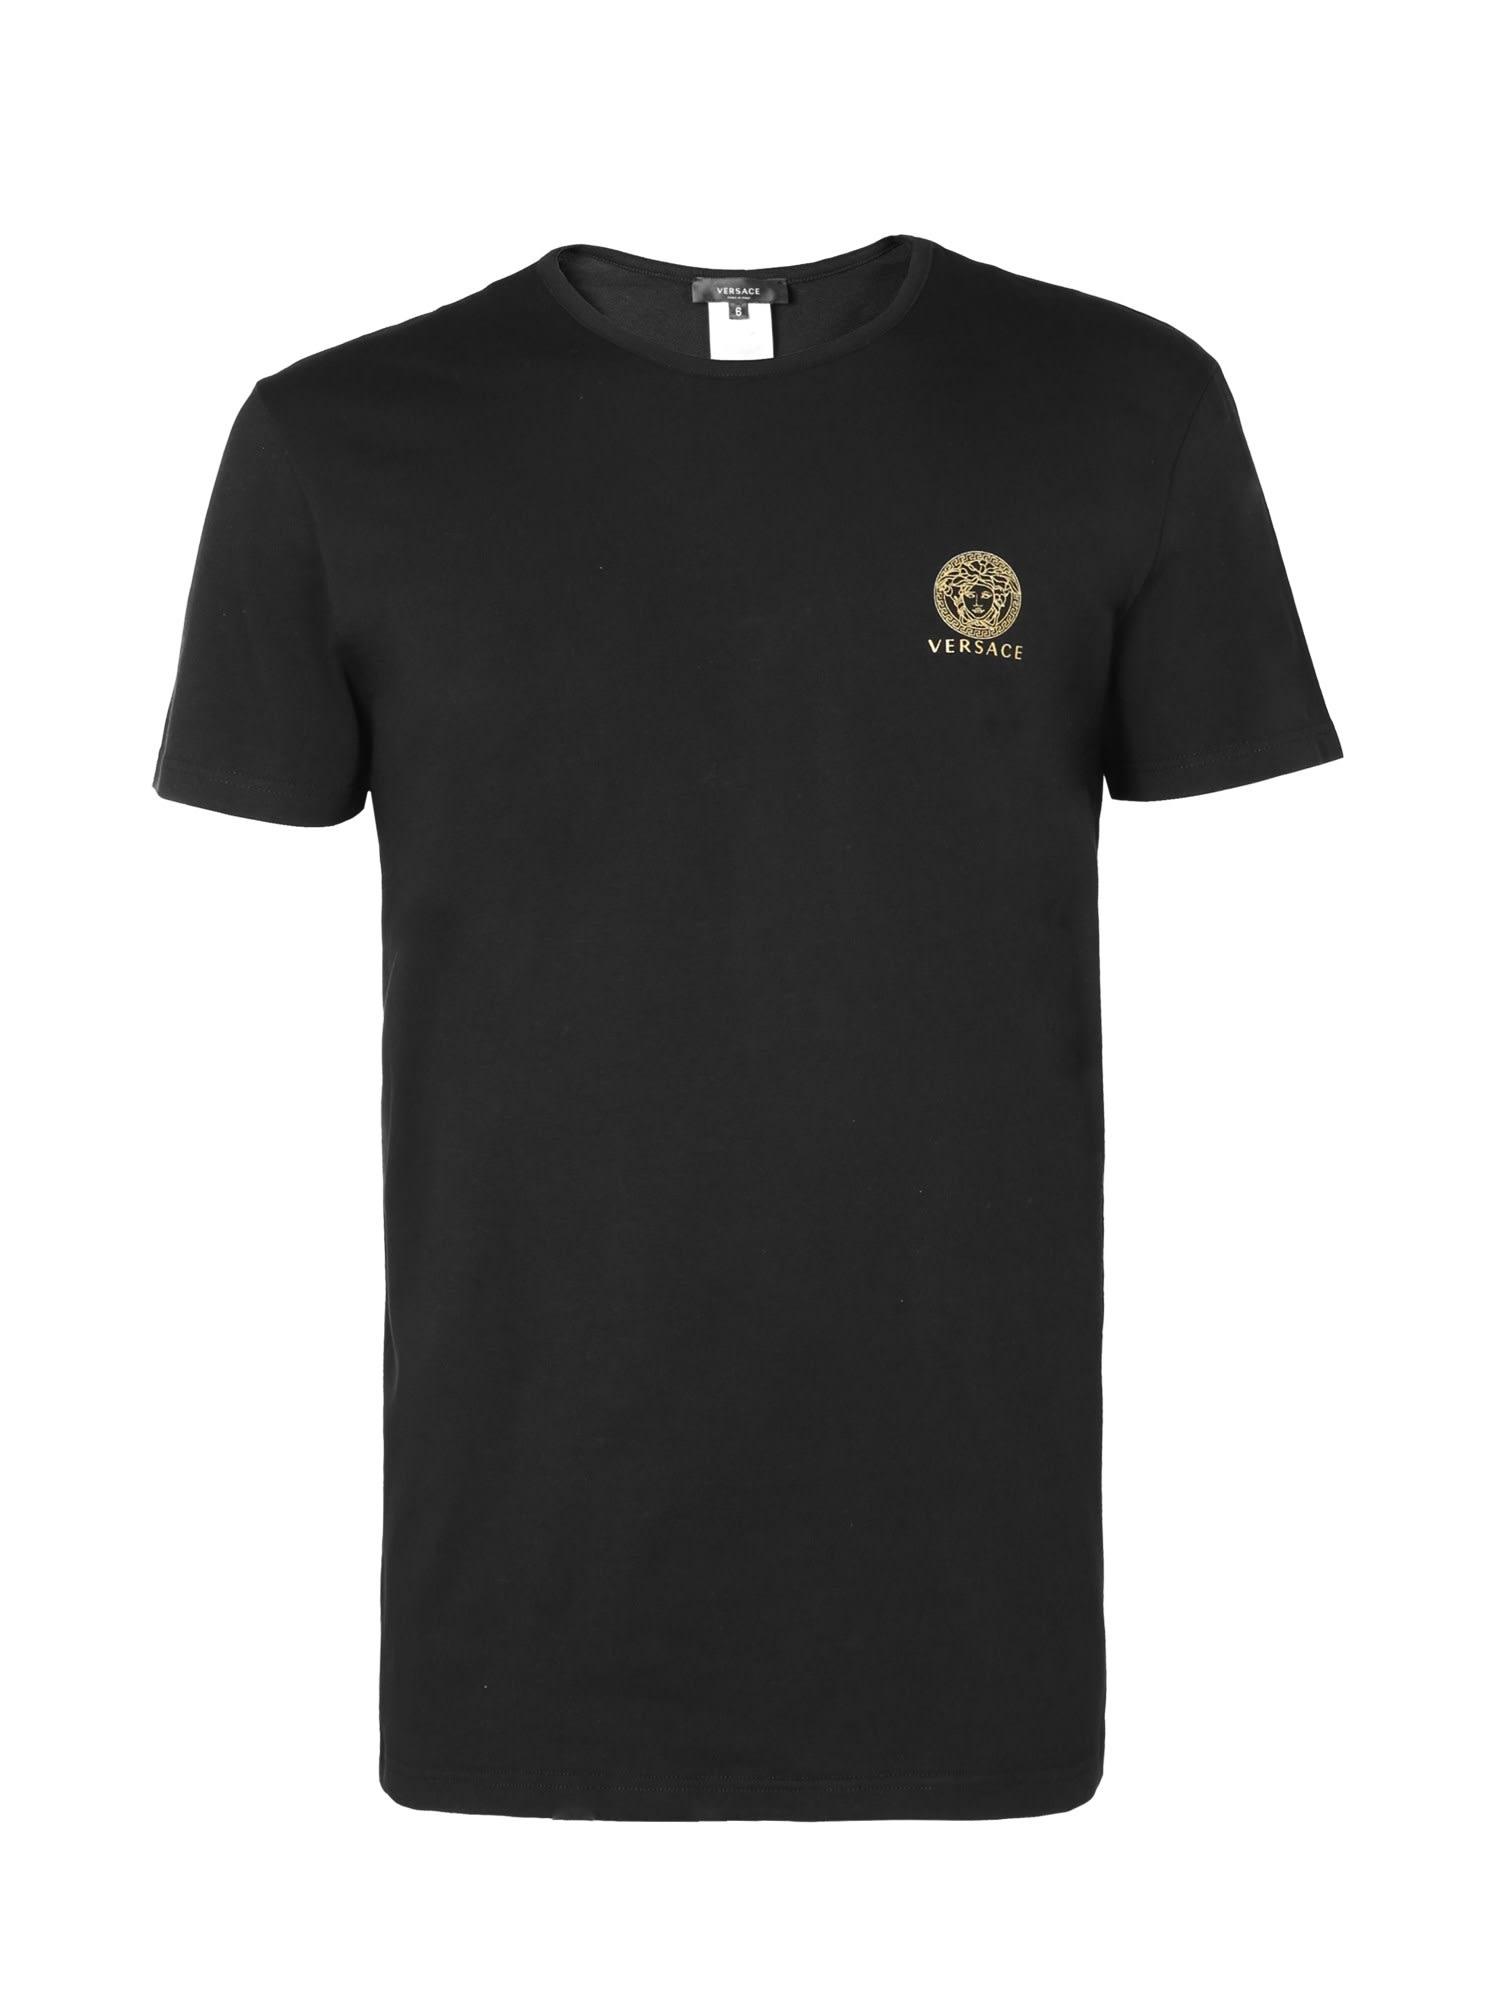 Versace Cotton Underwear T-shirt With Medusa in Nero (Black) for Men - Lyst